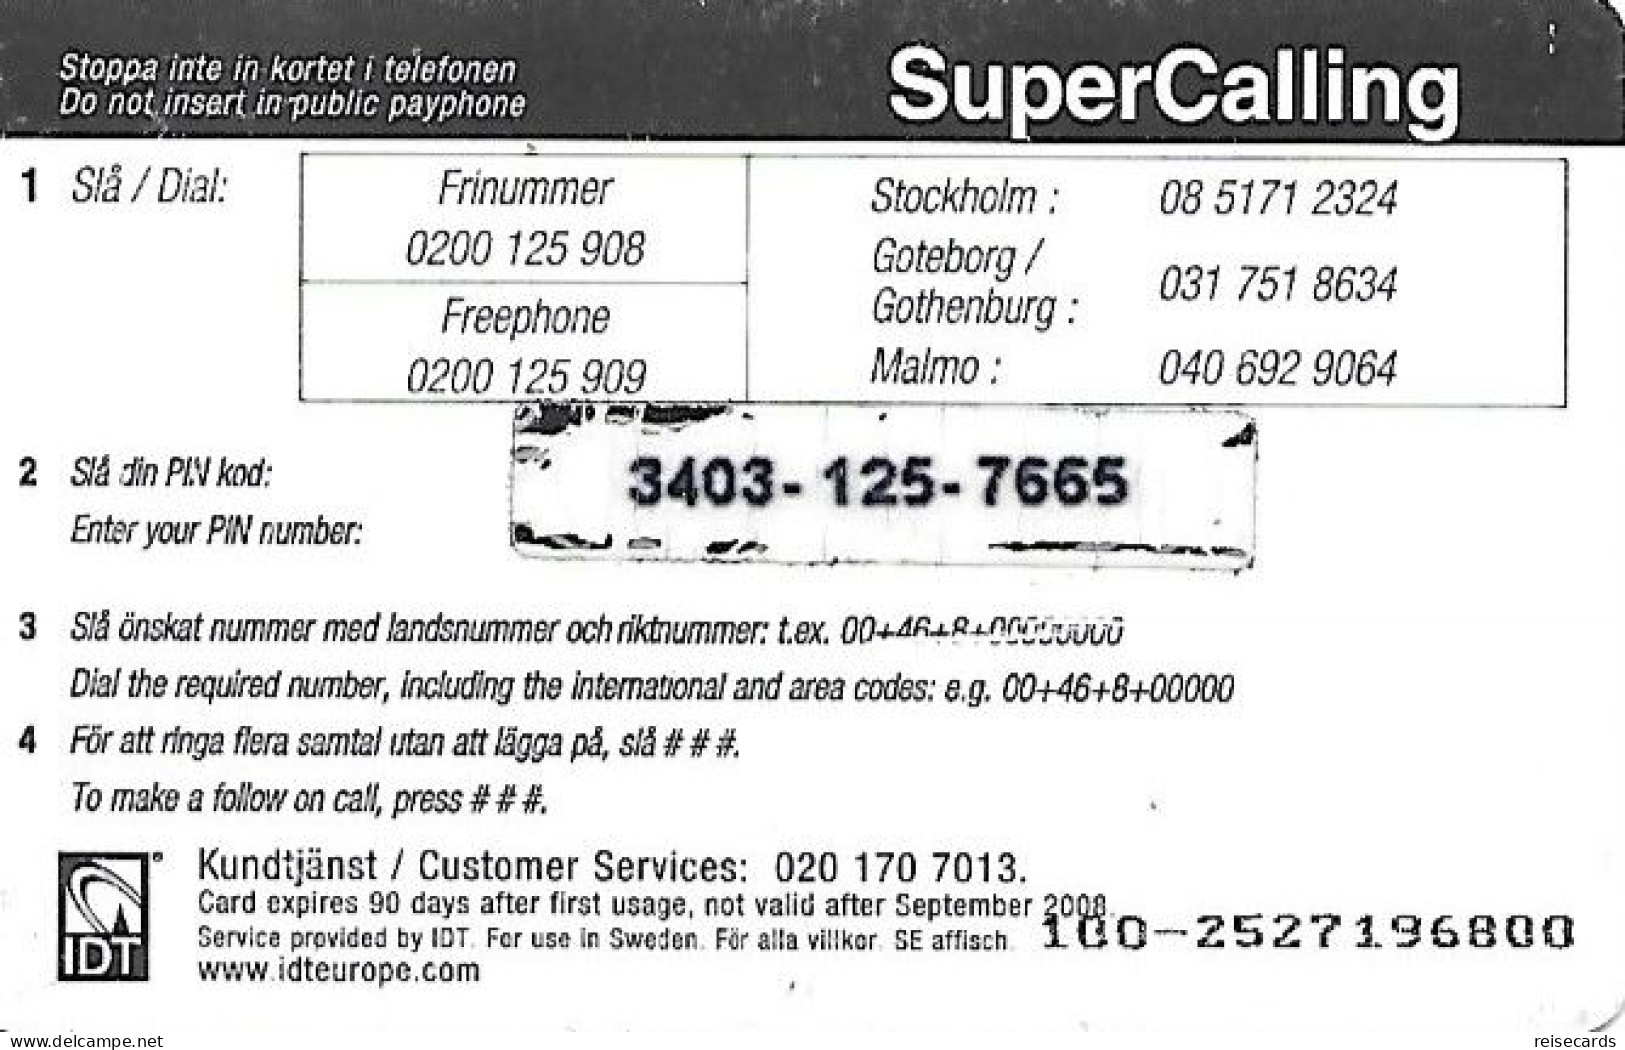 Sweden: Prepaid IDT - SuperCalling 09.08 - Sweden